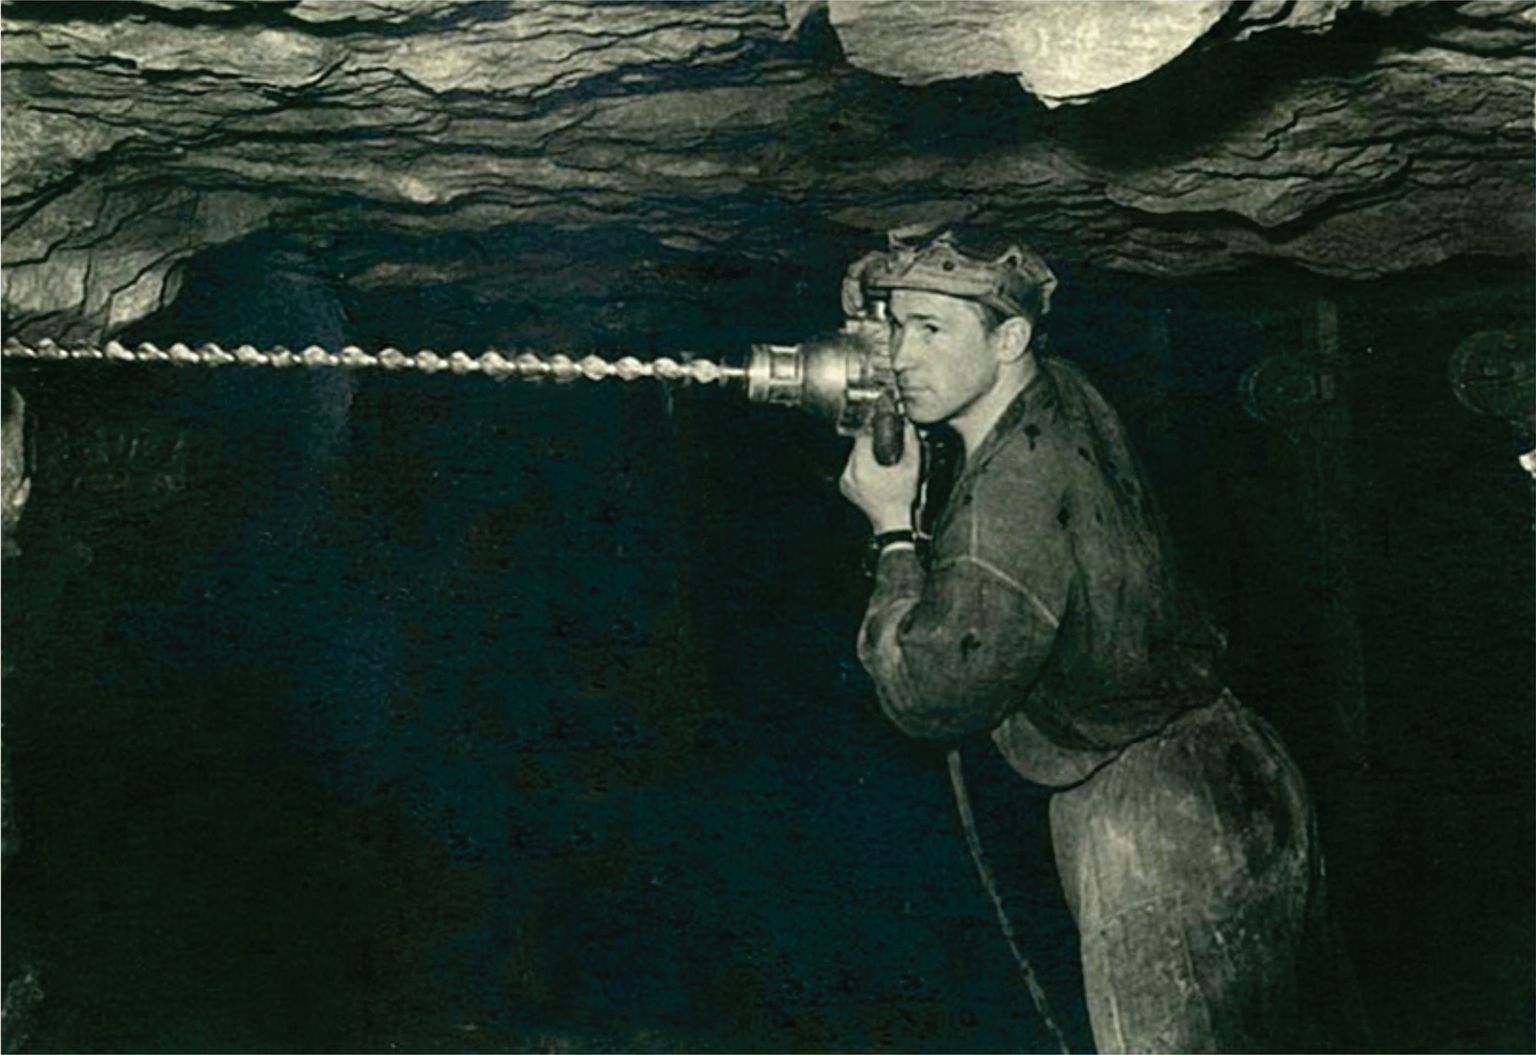 Мейнхард Реббан работал на шахте в 1955-1982 годах, большую часть времени - бурильщиком.